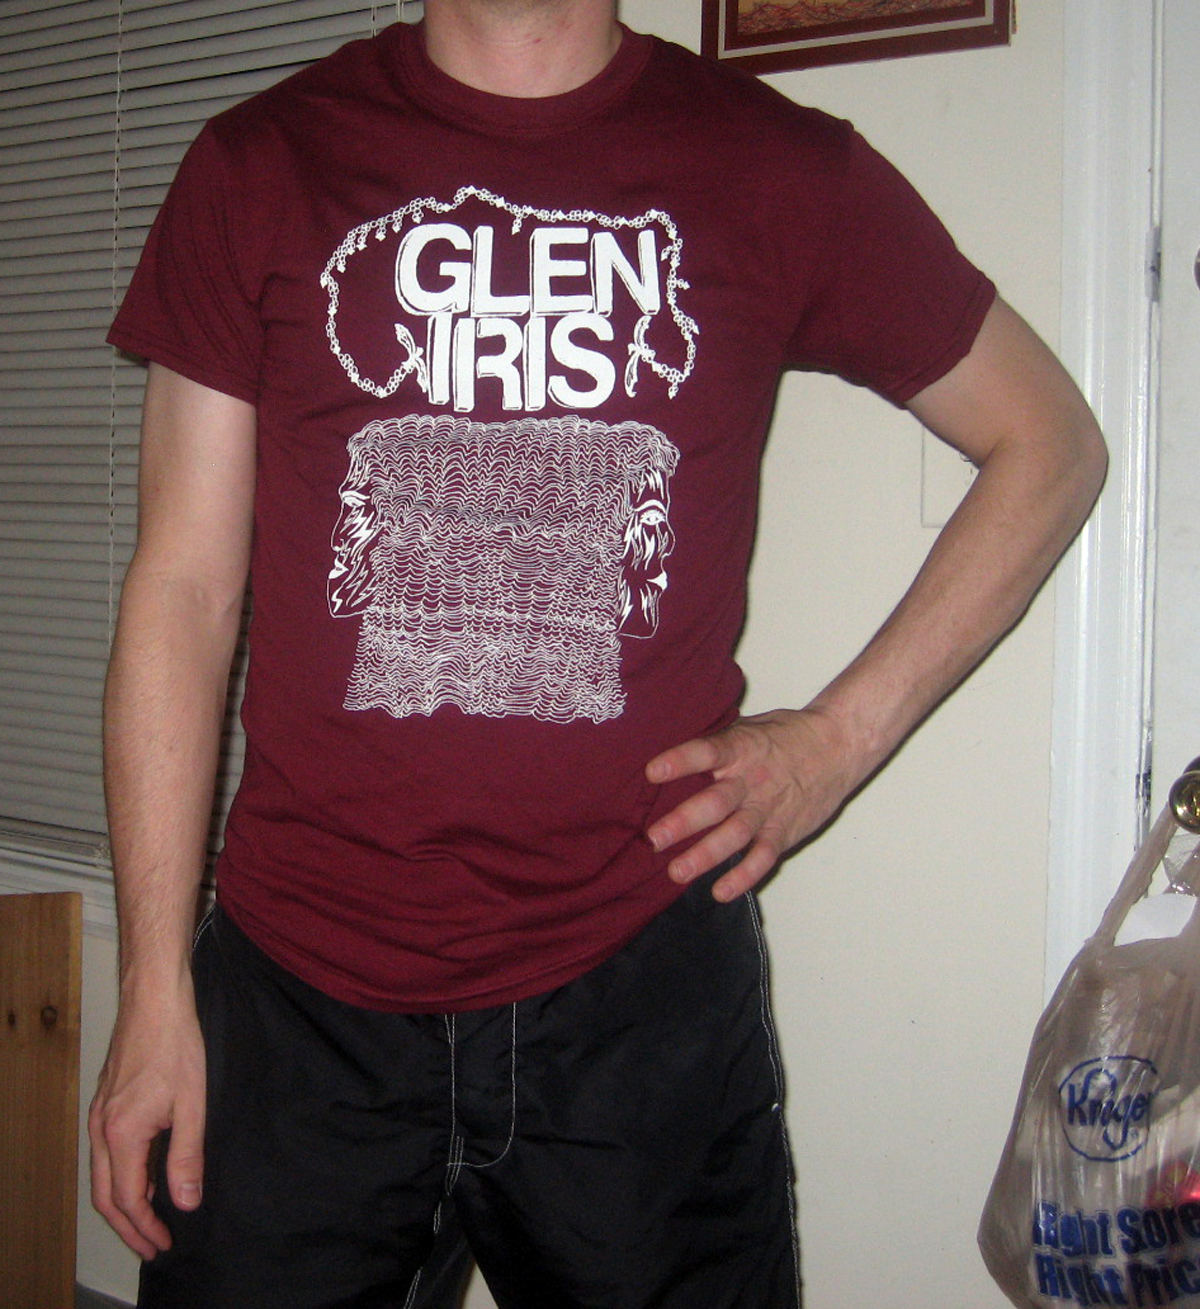 glen iris mrn shirt